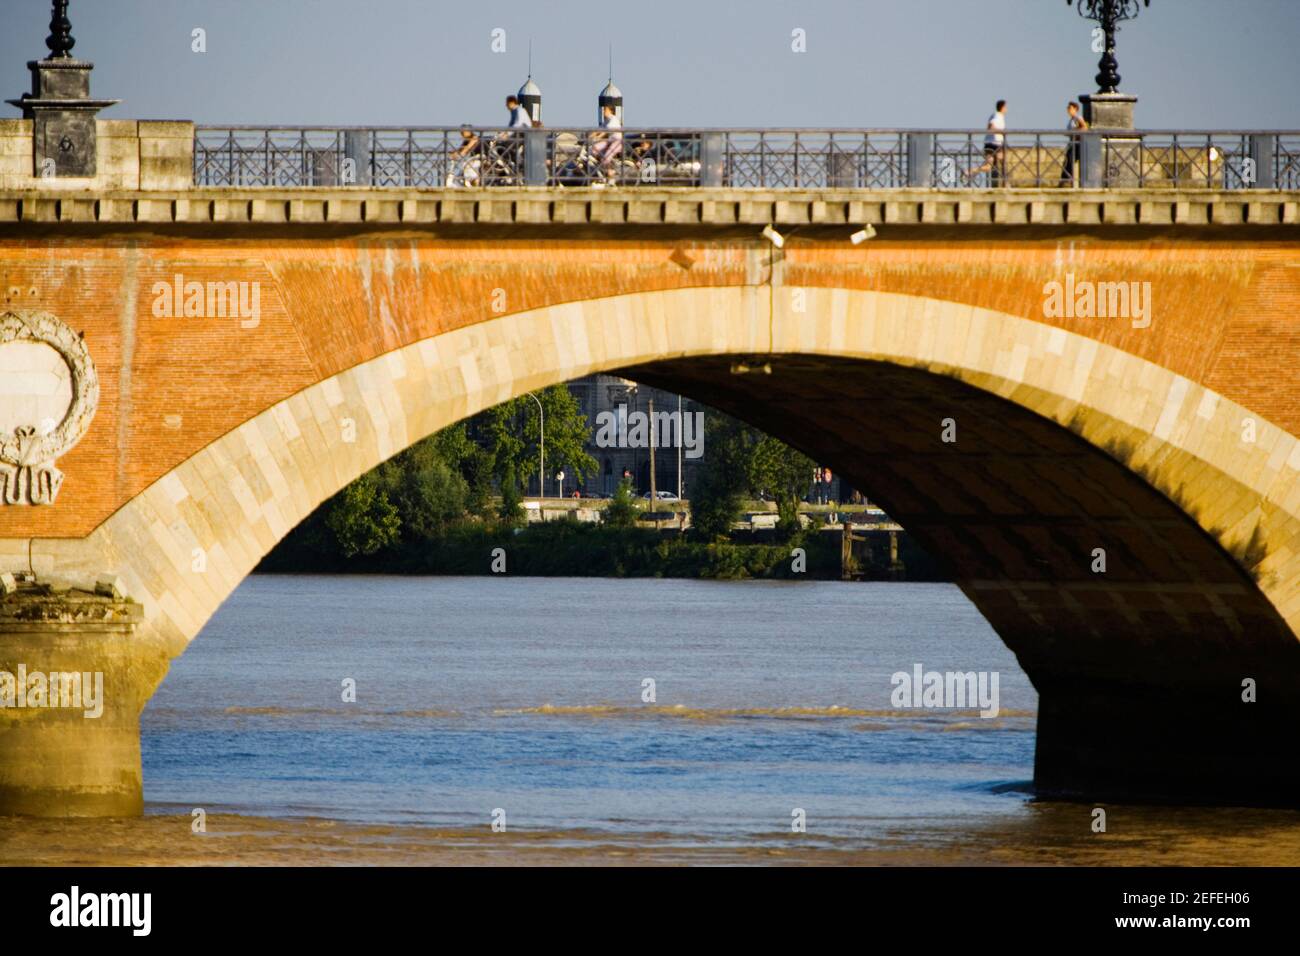 Arch bridge across a river, Pont De Pierre, Garonne River, Bordeaux, Aquitaine, France Stock Photo